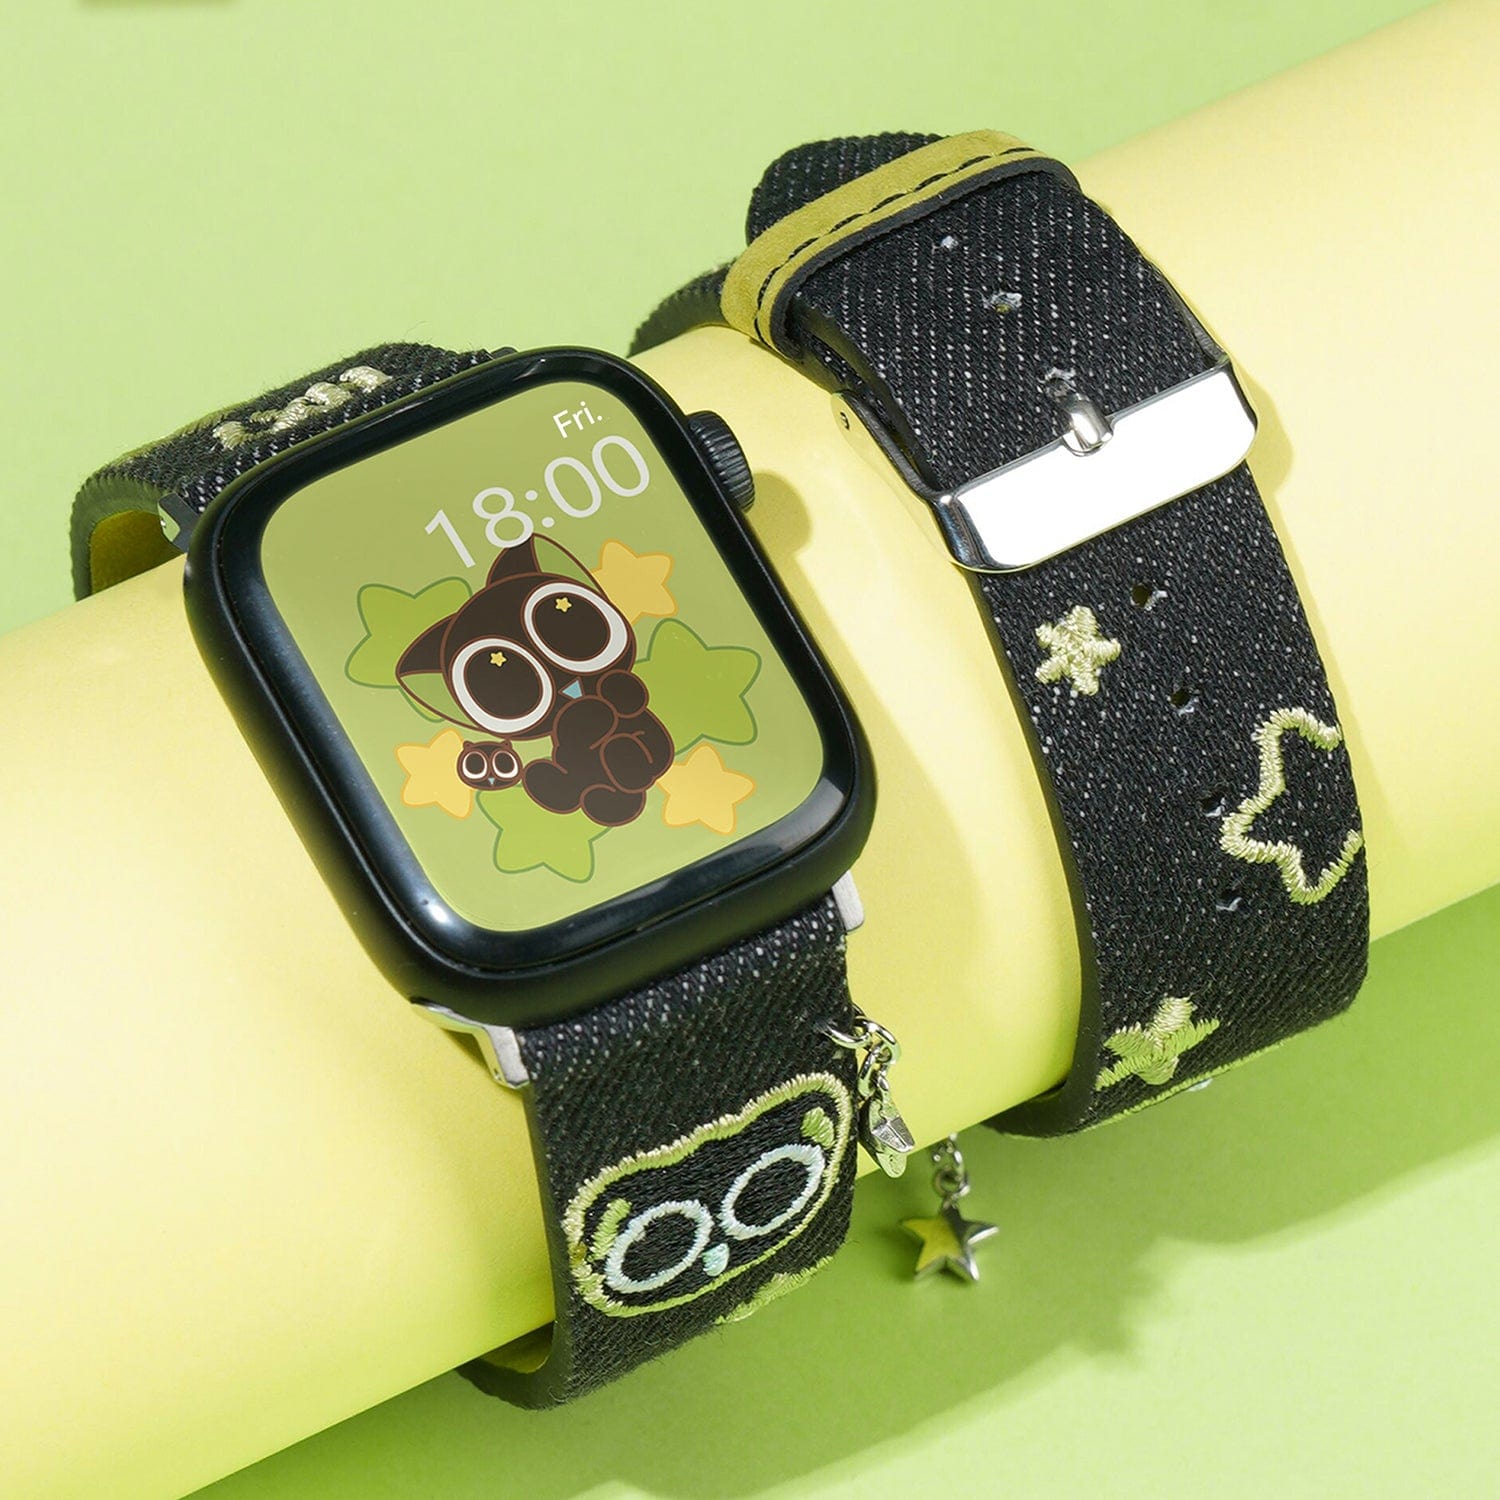 GeekShare x HEI Apple Watch Bands